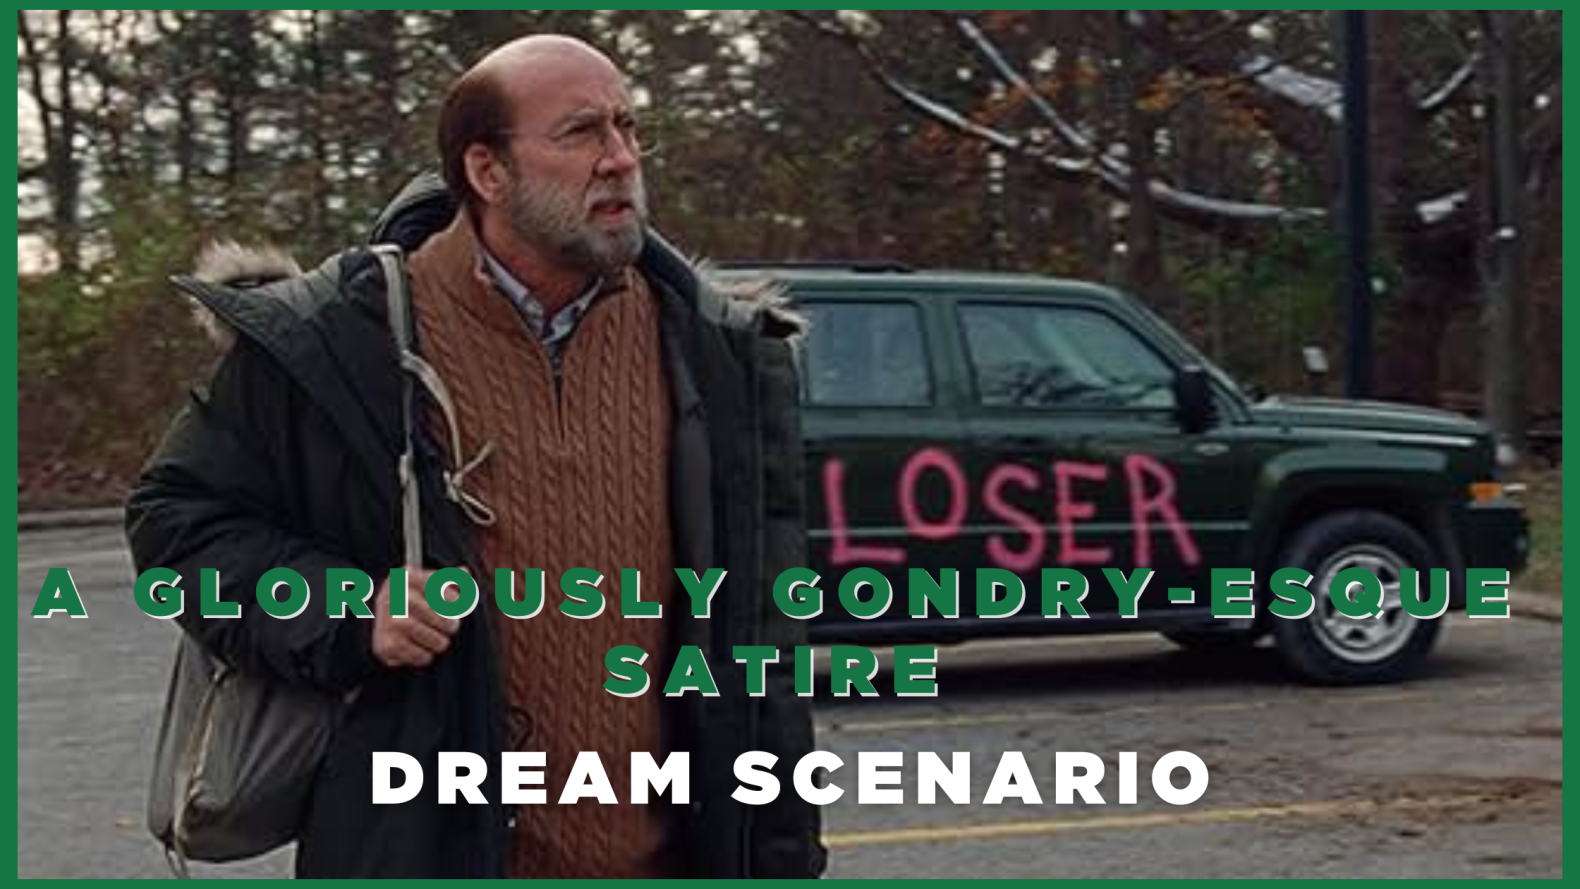 Dream Scenario - A Gloriously Gondry-esque Satire